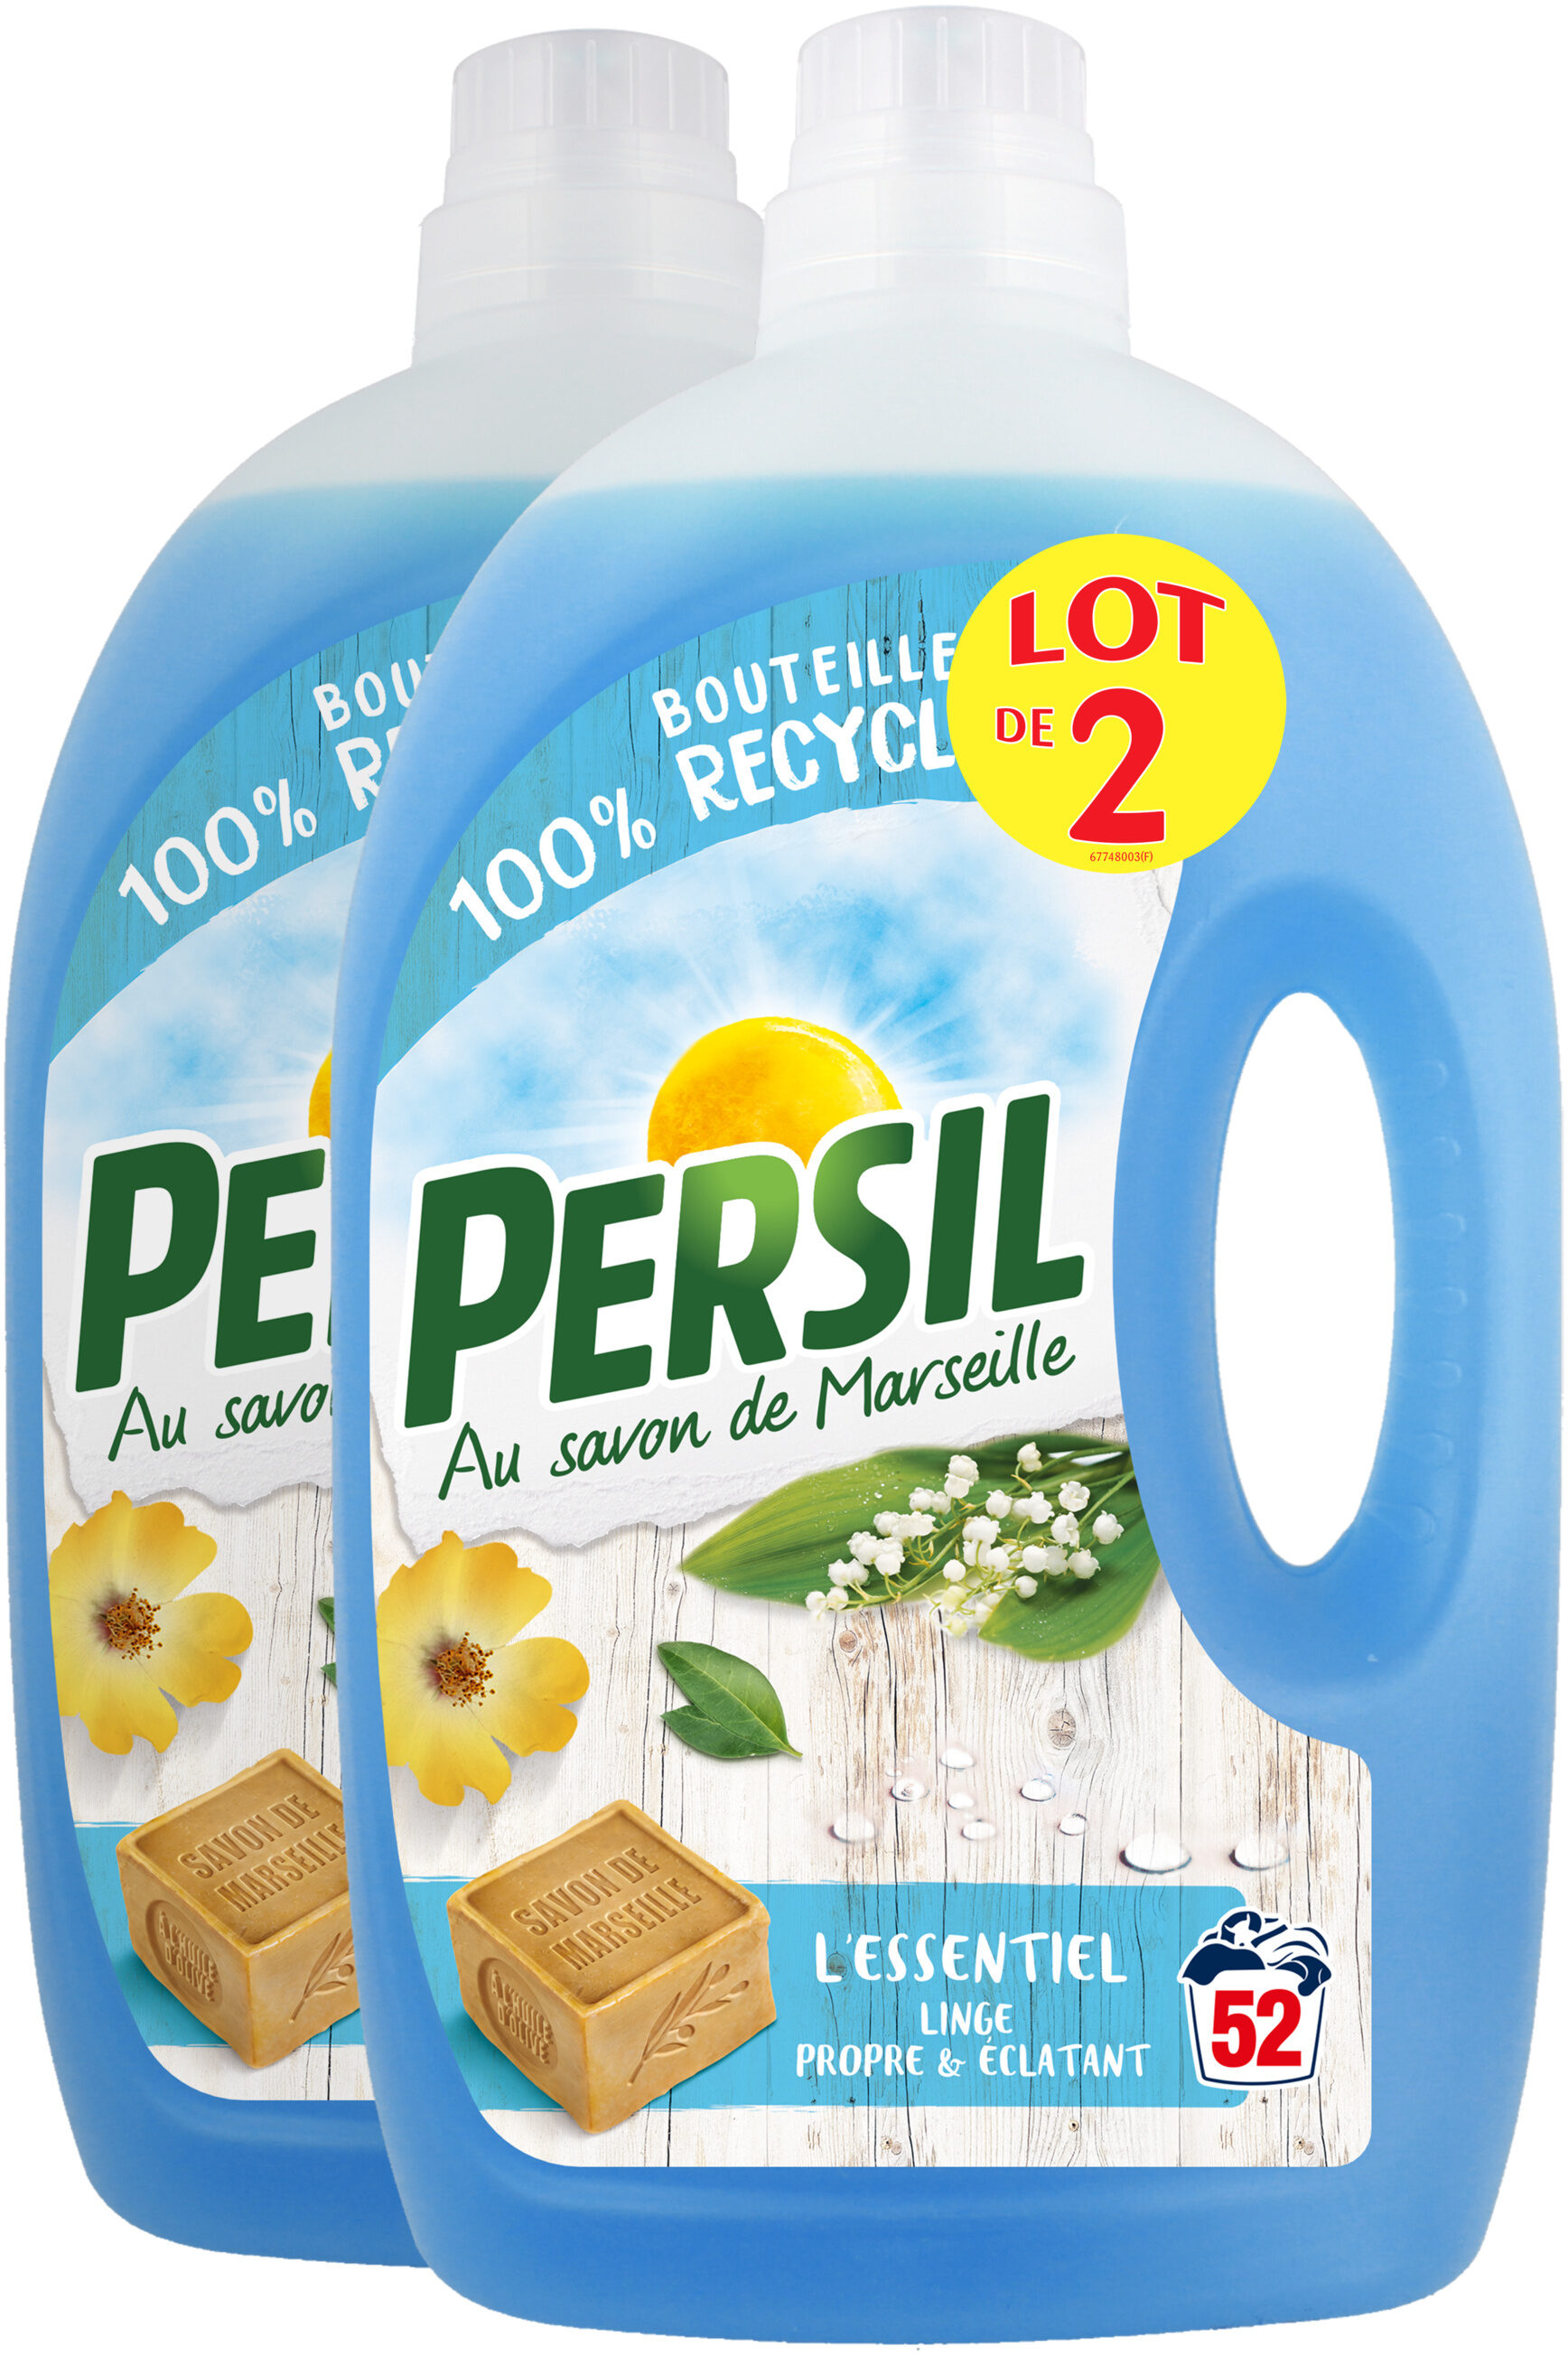 Persil Lessive Liquide l'Essentiel 2,6l 52 Lavages Lot de 2 - Tuote - fr